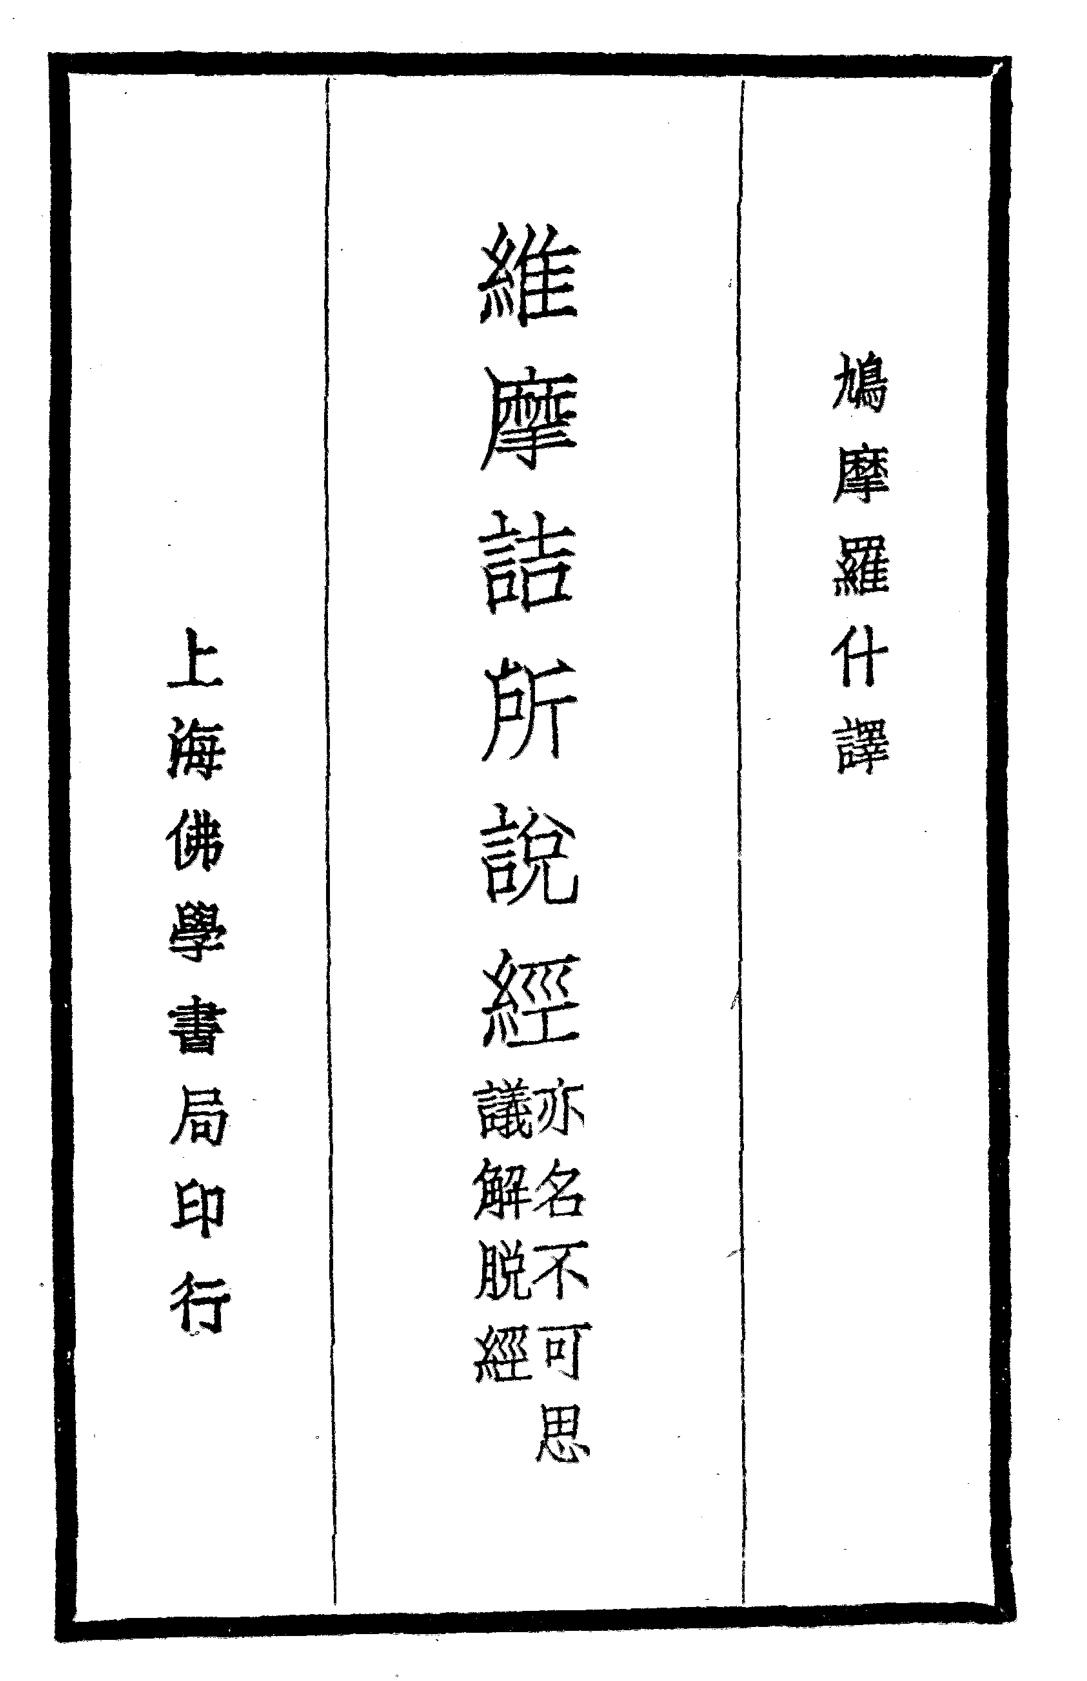 Weimojie suoshuo jing 1935.png